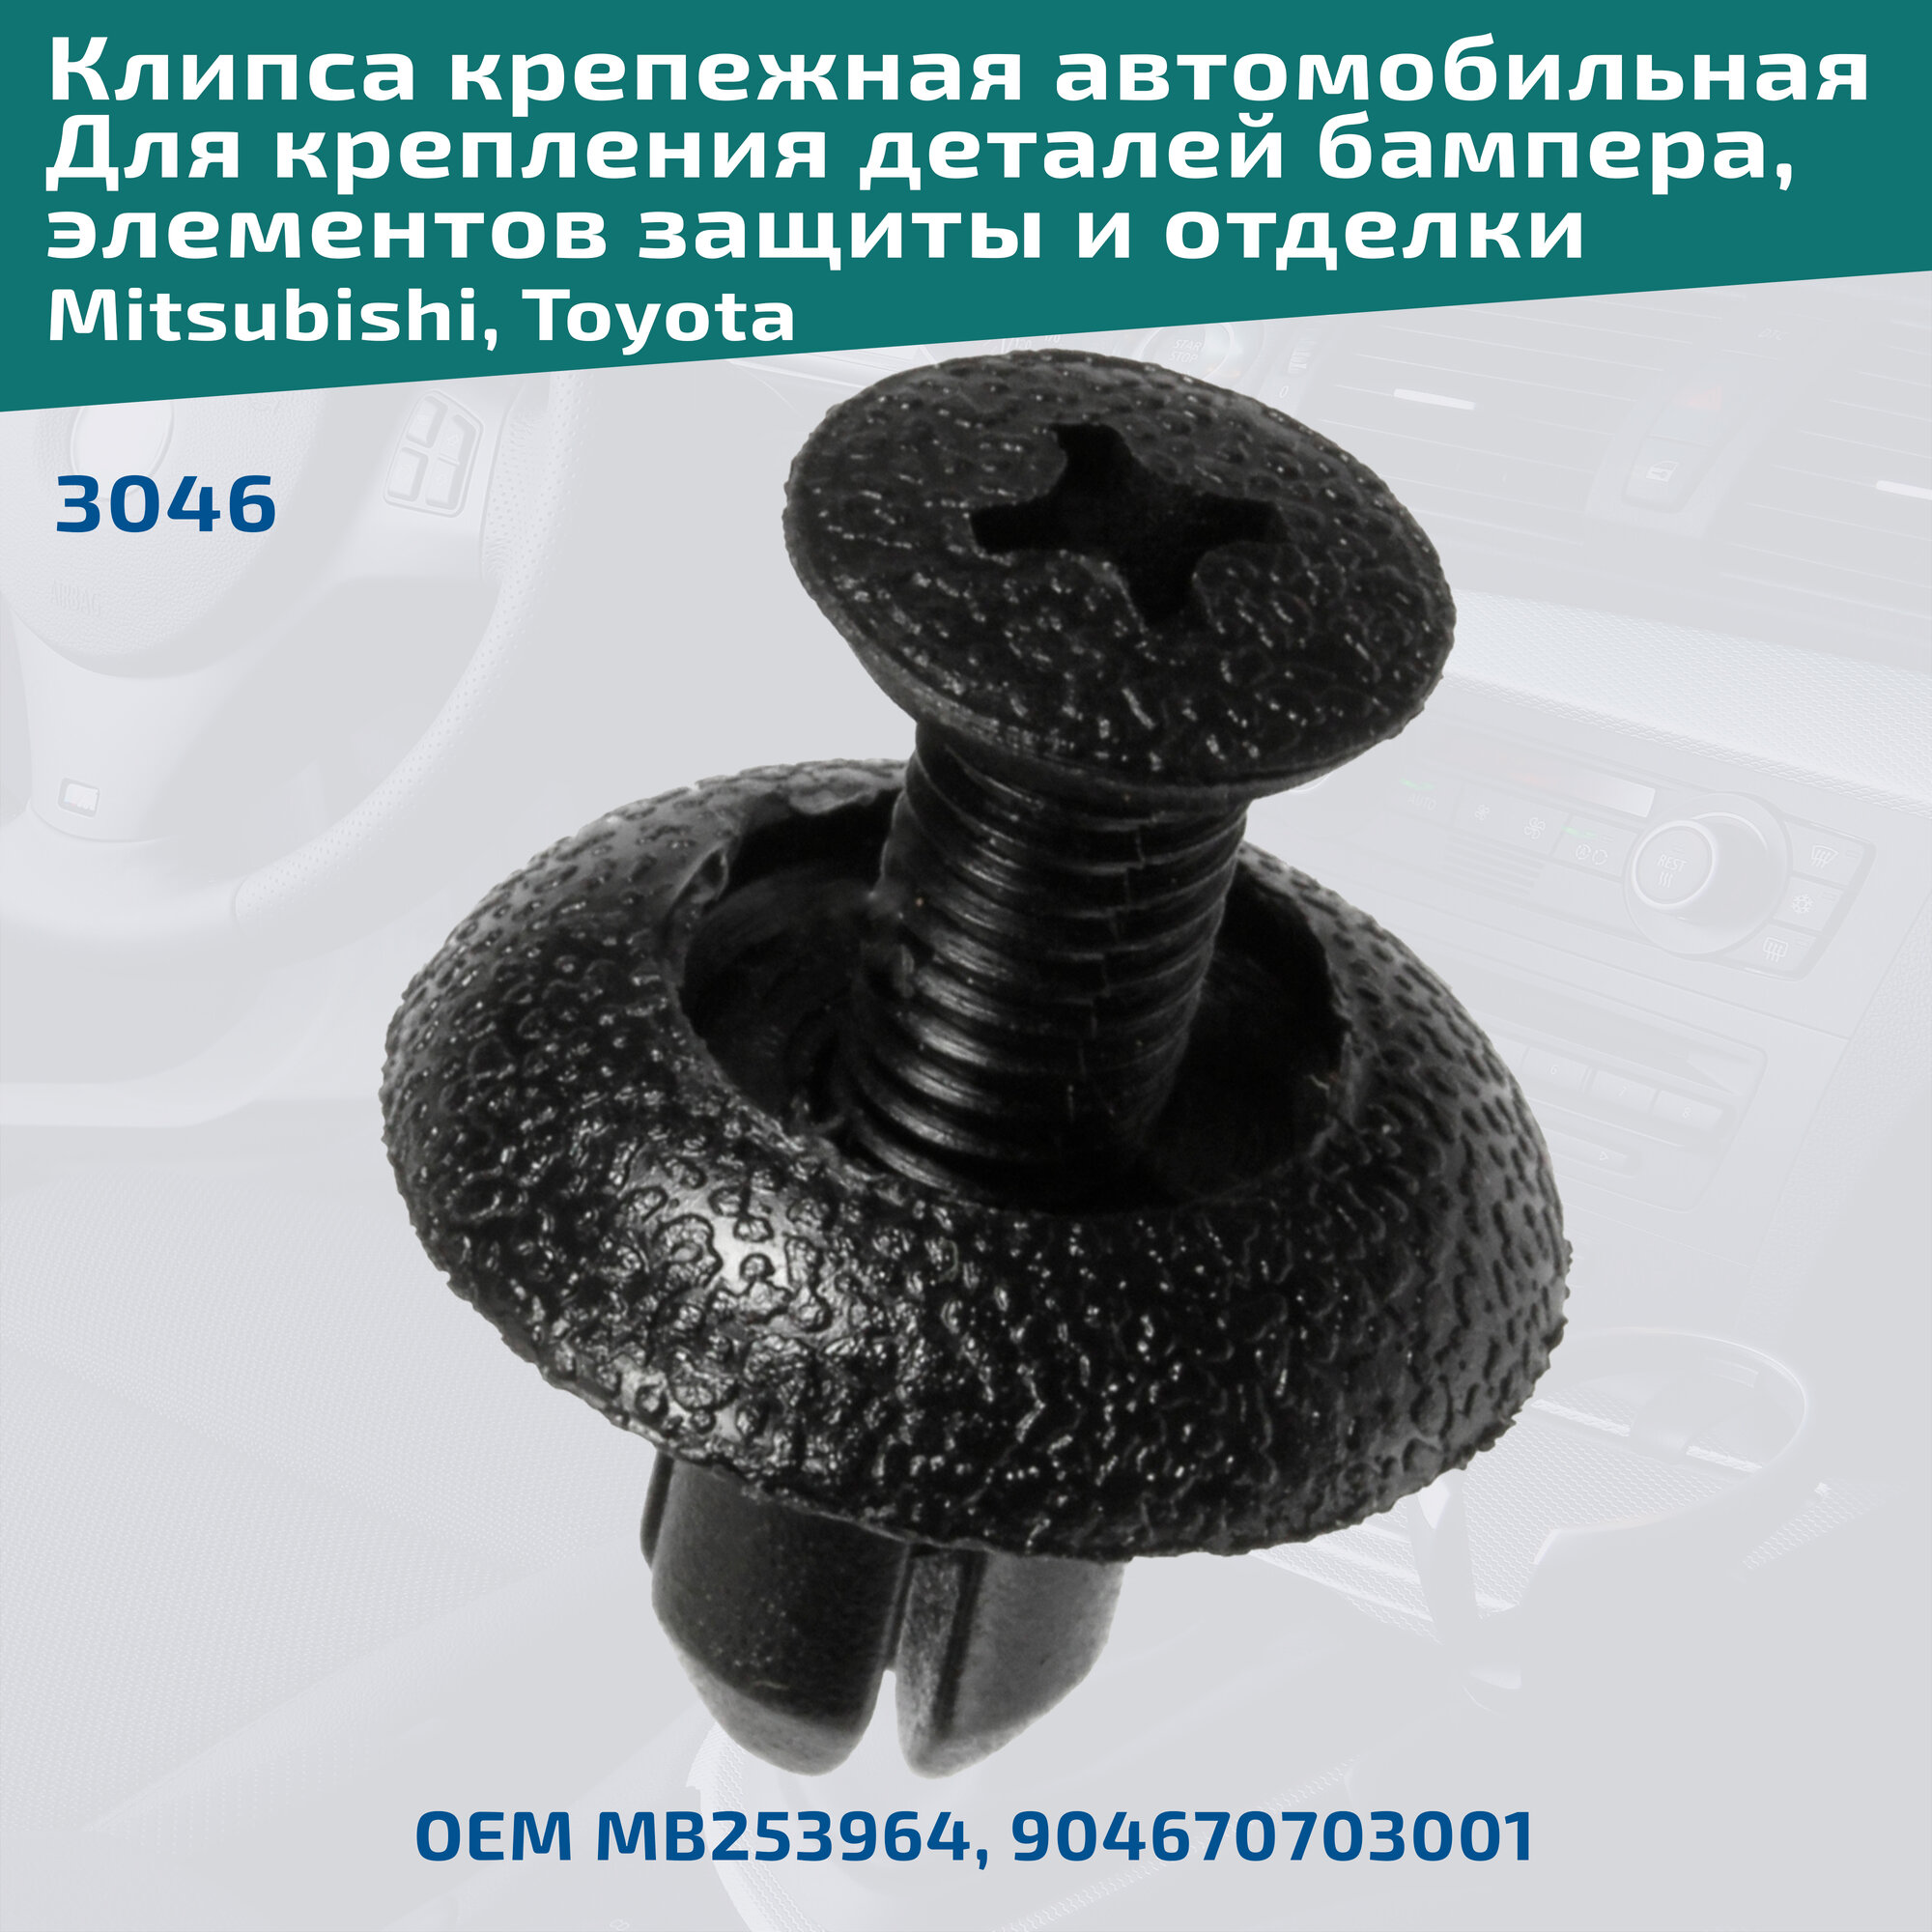 Клипса крепления деталей бампера, элементов защиты и отделки на автомобилях: Mitsubishi, Toyota. Комплект 6 клипс. ОЕМ MB253964, 904670703001